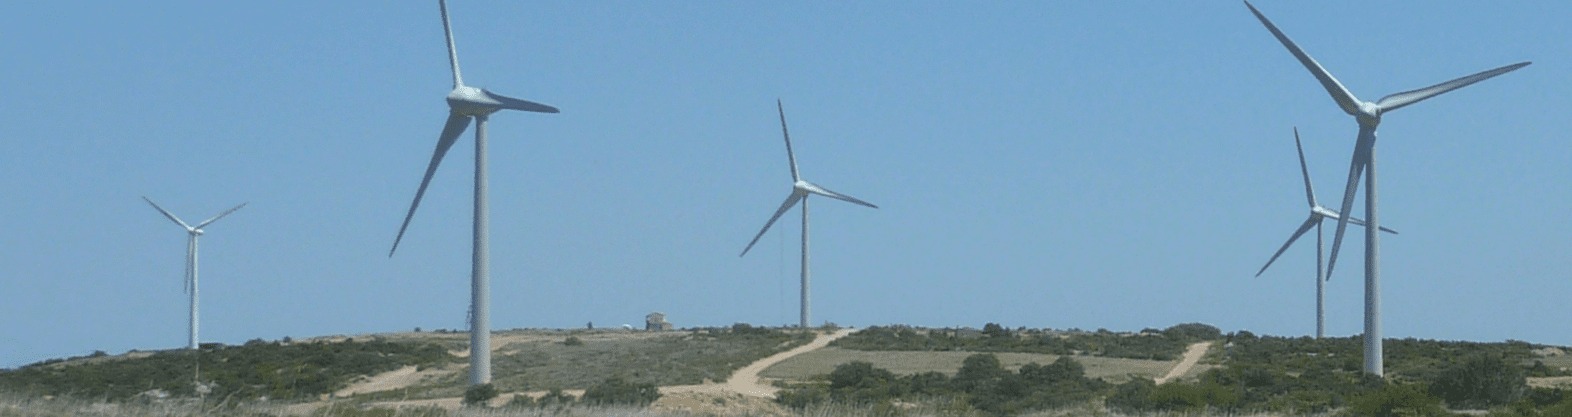 wind turbine parc total quadran
